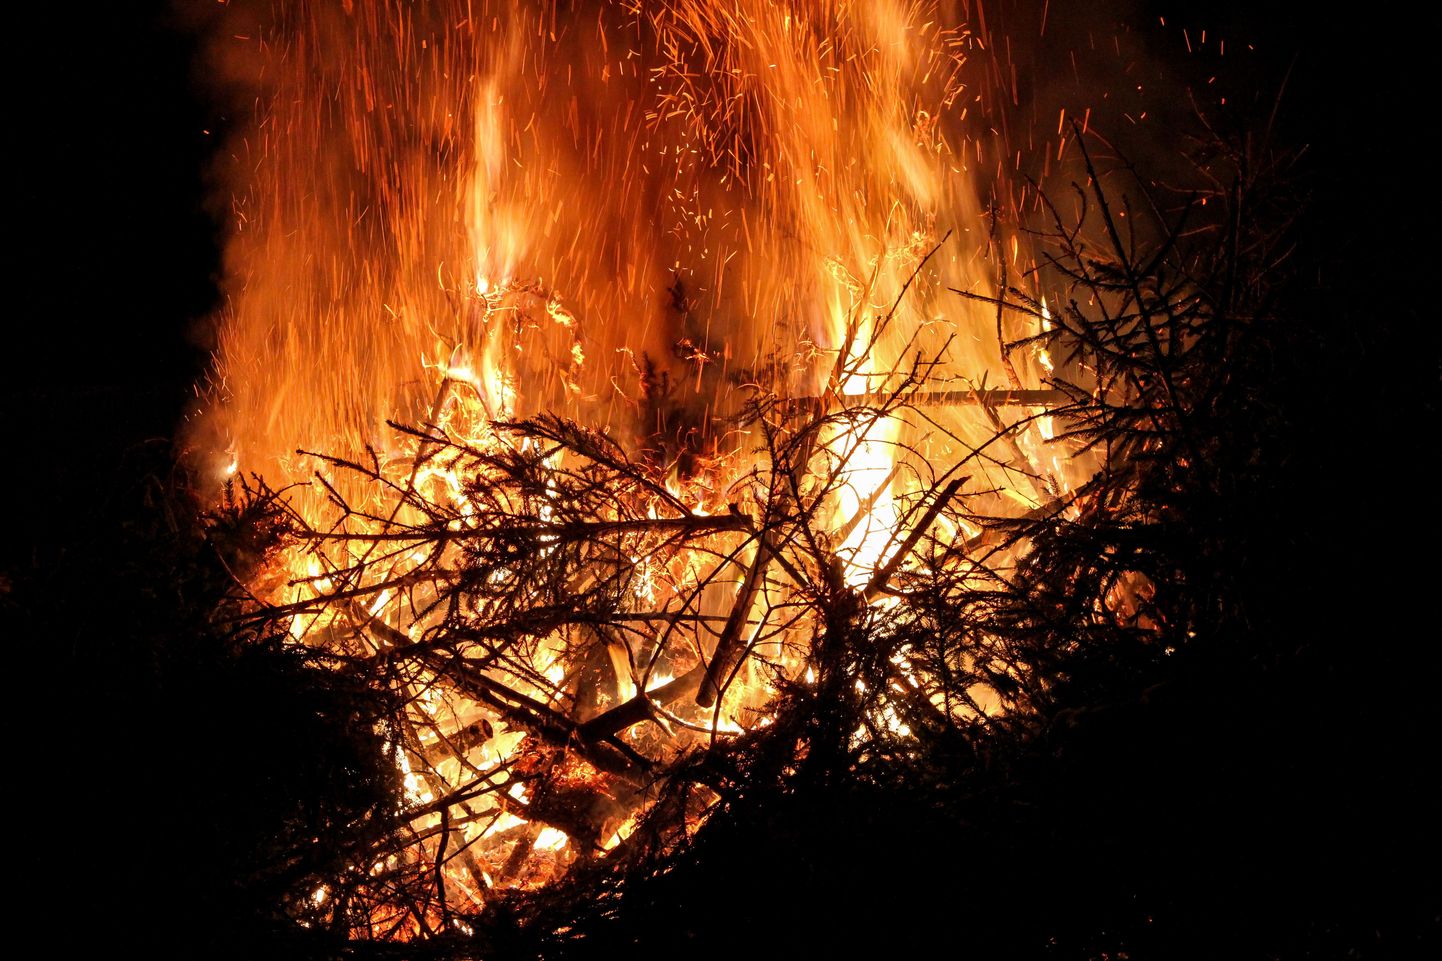 Täna põlevad kuused suures lõkkes Palupera vallas. Ühised kuuskede põletamised on maakonnas ees veel Põdrala ja Karula vallas.